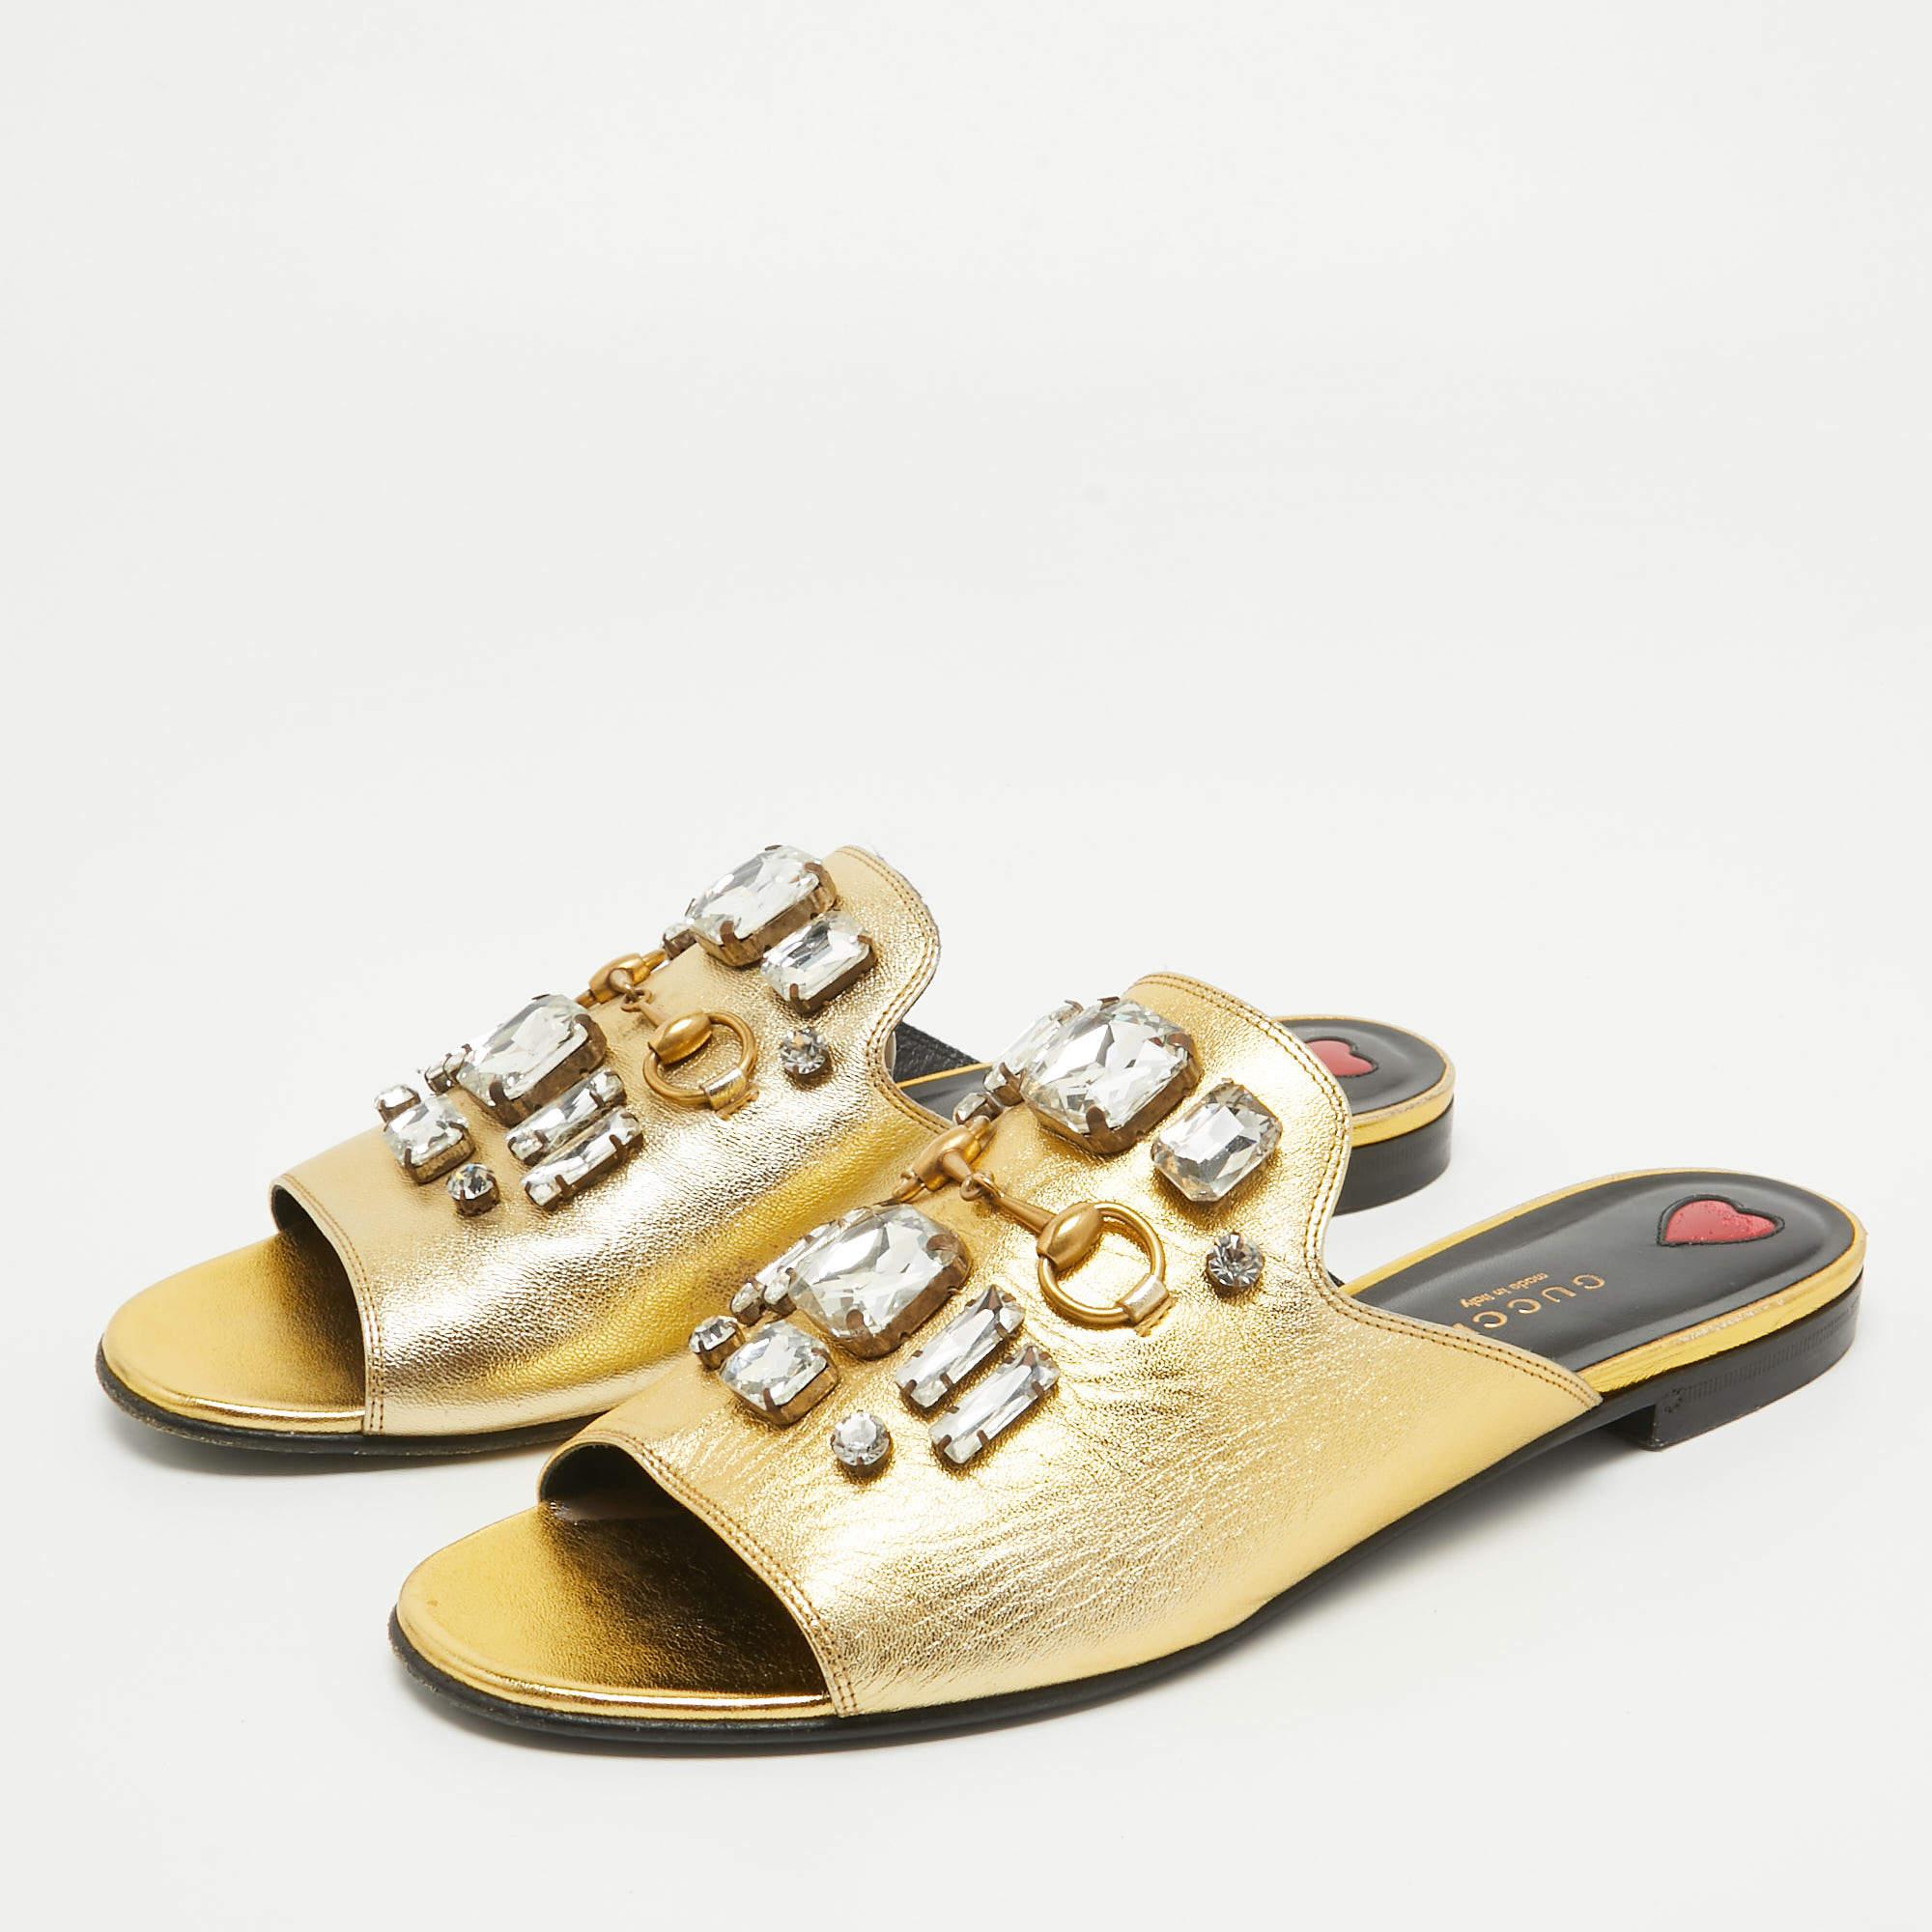 Umrahmen Sie Ihre Füße mit diesen flachen Gucci-Slides in Gold. Die aus den besten MATERIALEN gefertigten Flats passen perfekt zu kurzen, Midi- und Maxi-Säumen.

